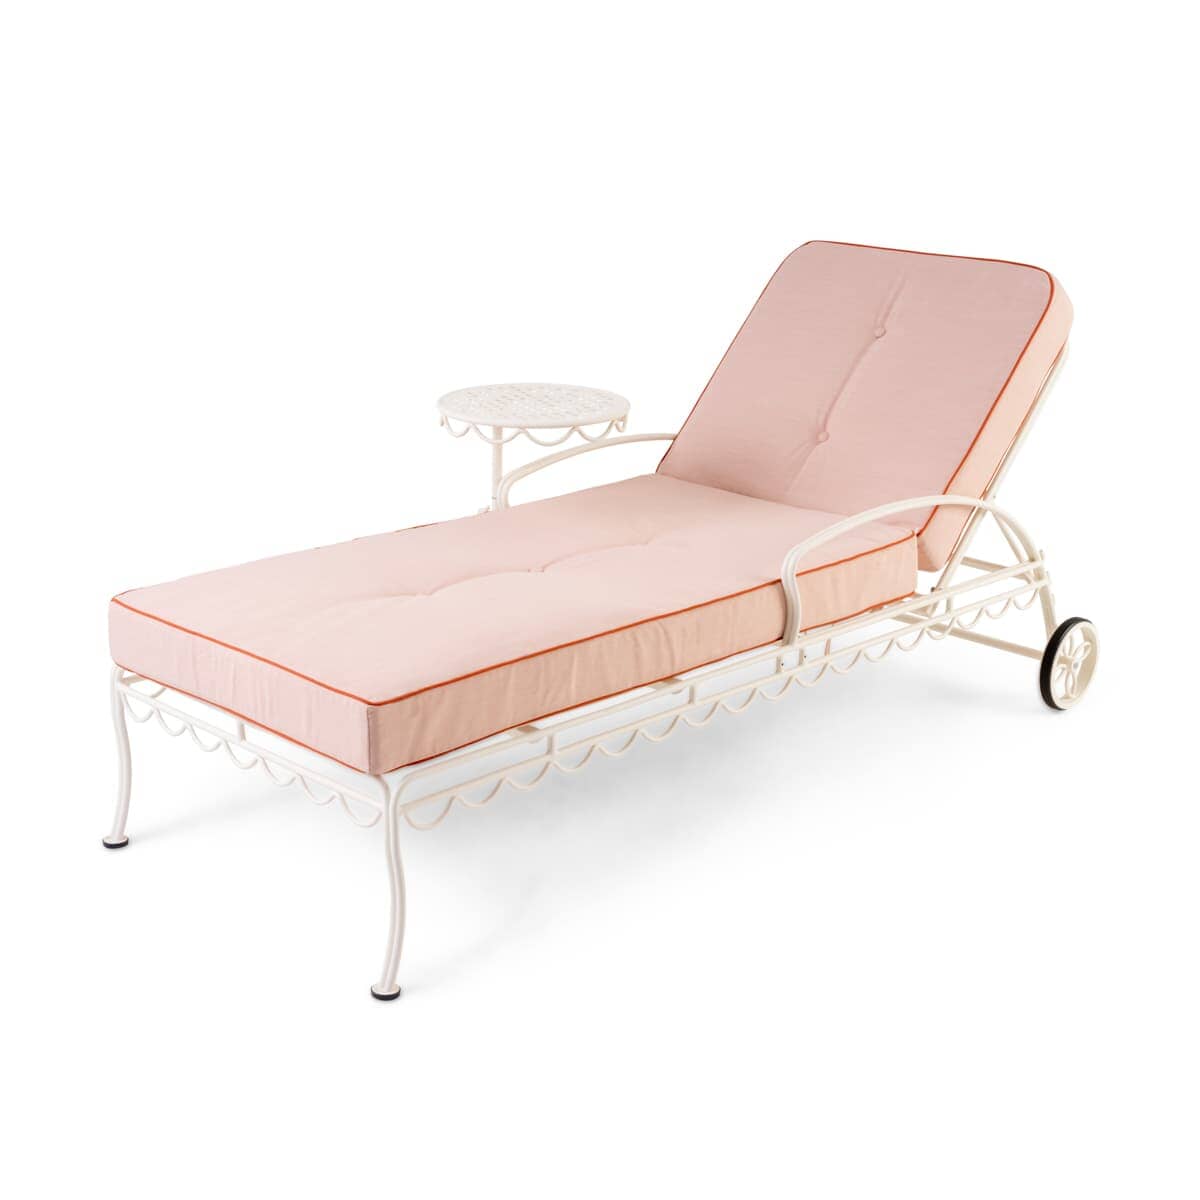 The Al Fresco Sun Lounger Cushion - Rivie Pink Al Fresco Sun Lounger Cushion Business & Pleasure Co Aus 